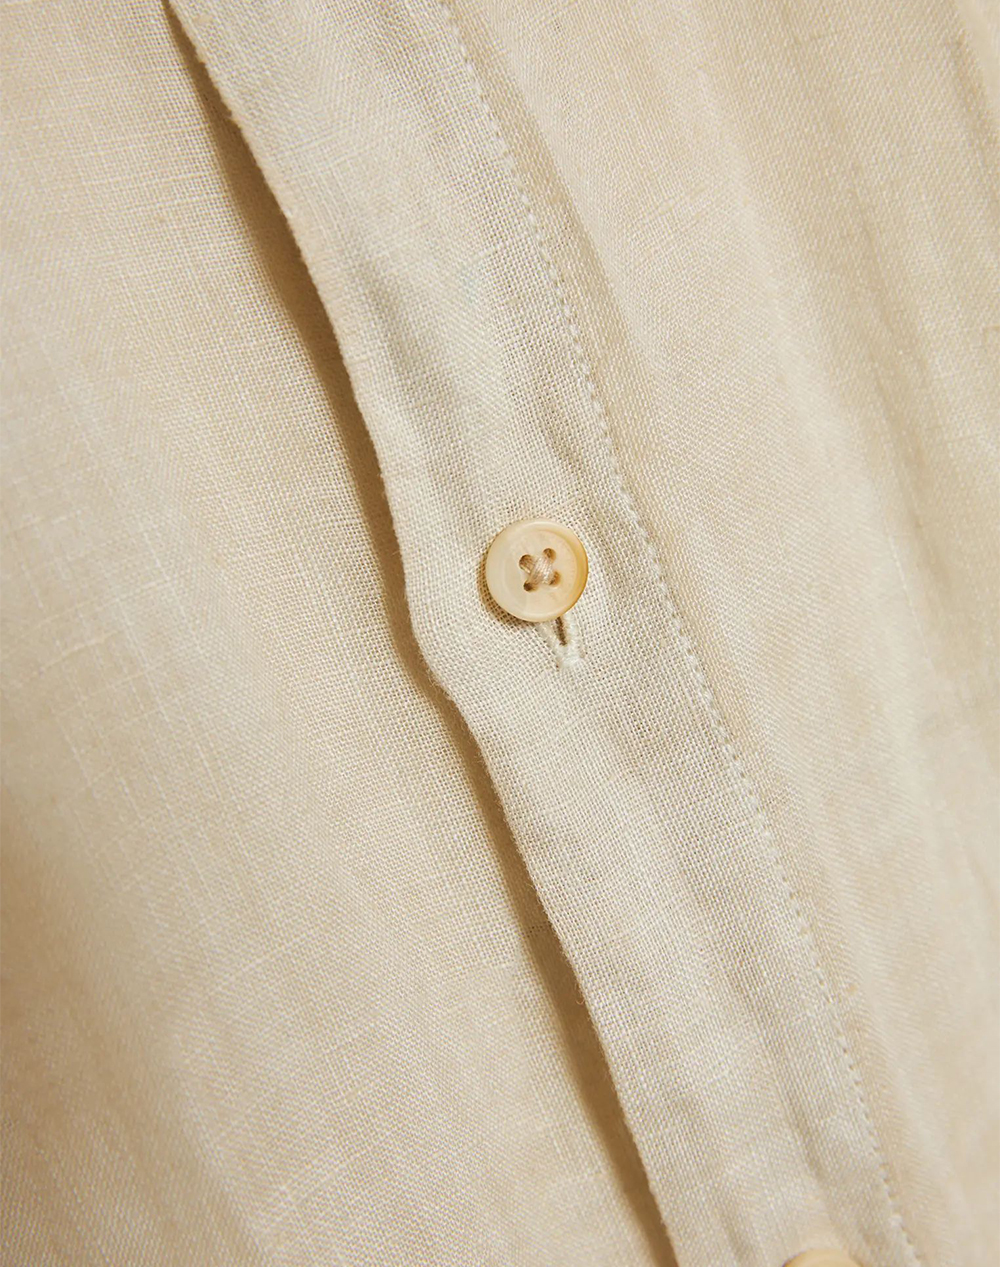 FUNKY BUDDHA Garment dyed košile s limcem mao